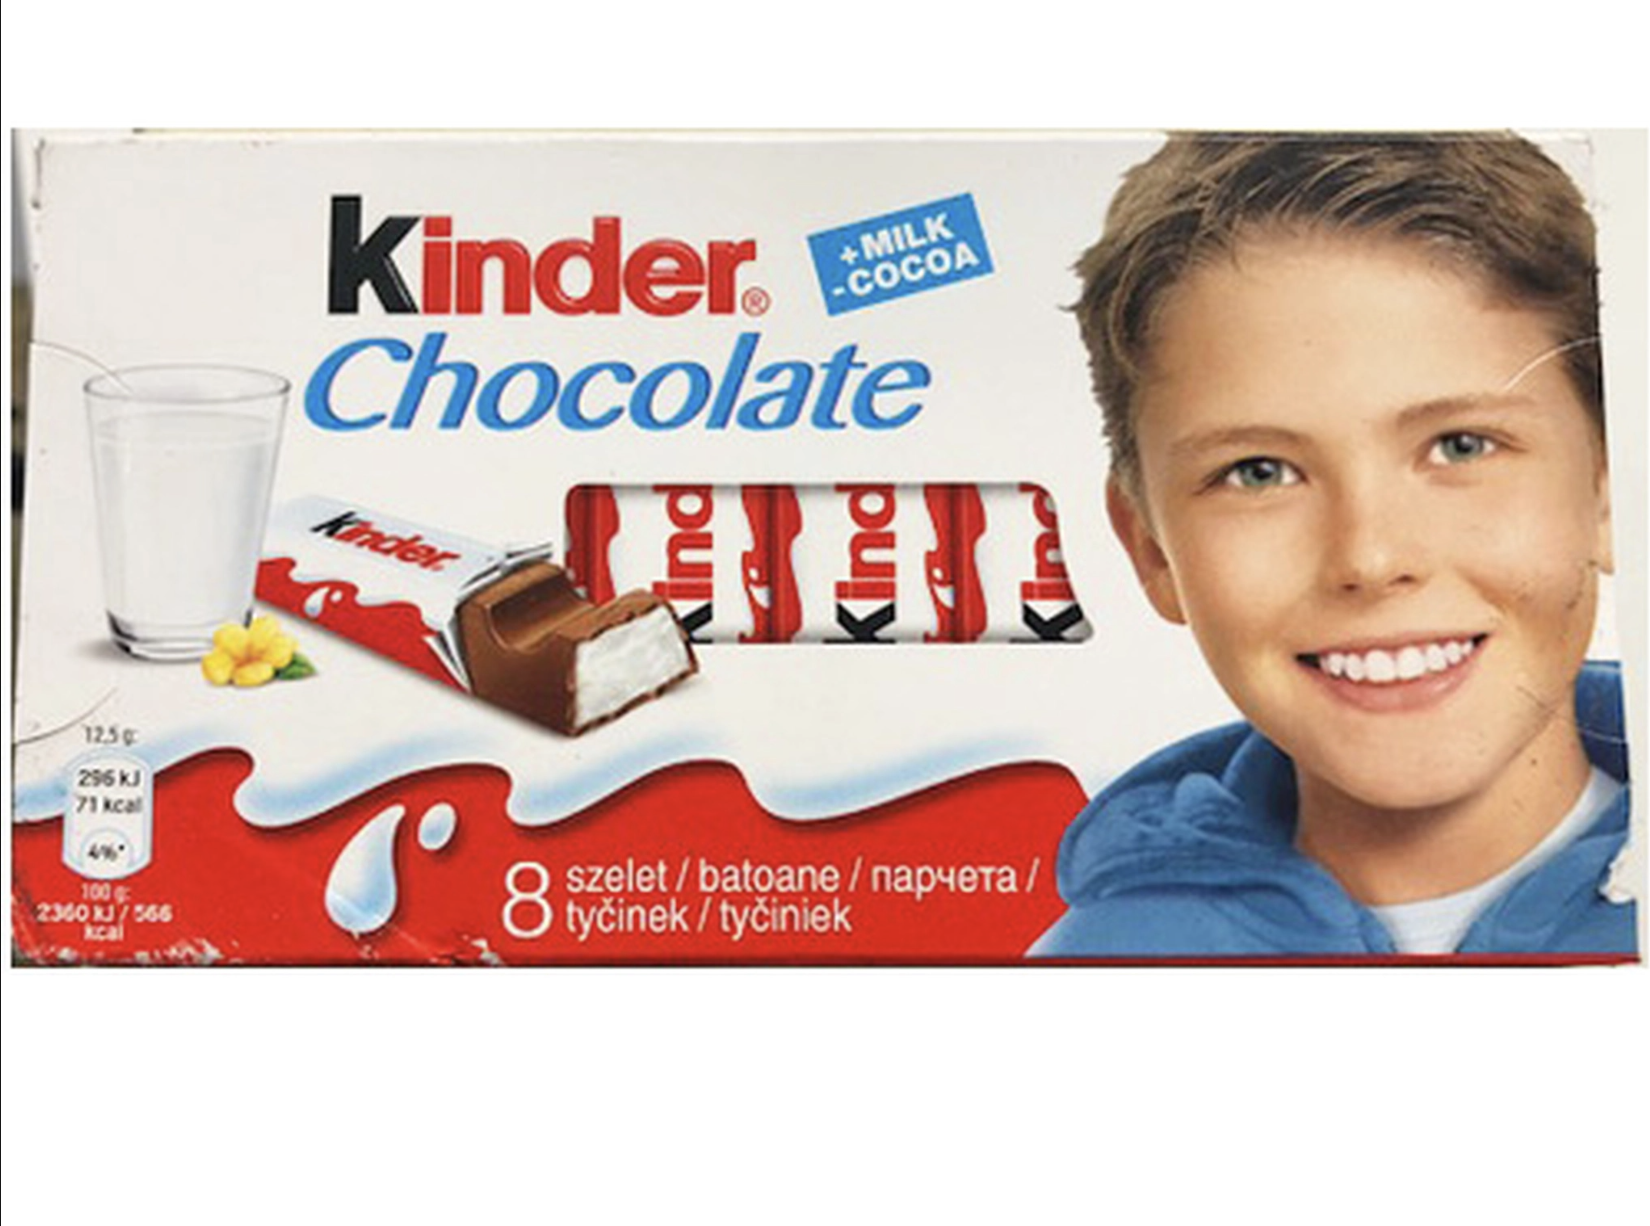 Kinder brand chocolate